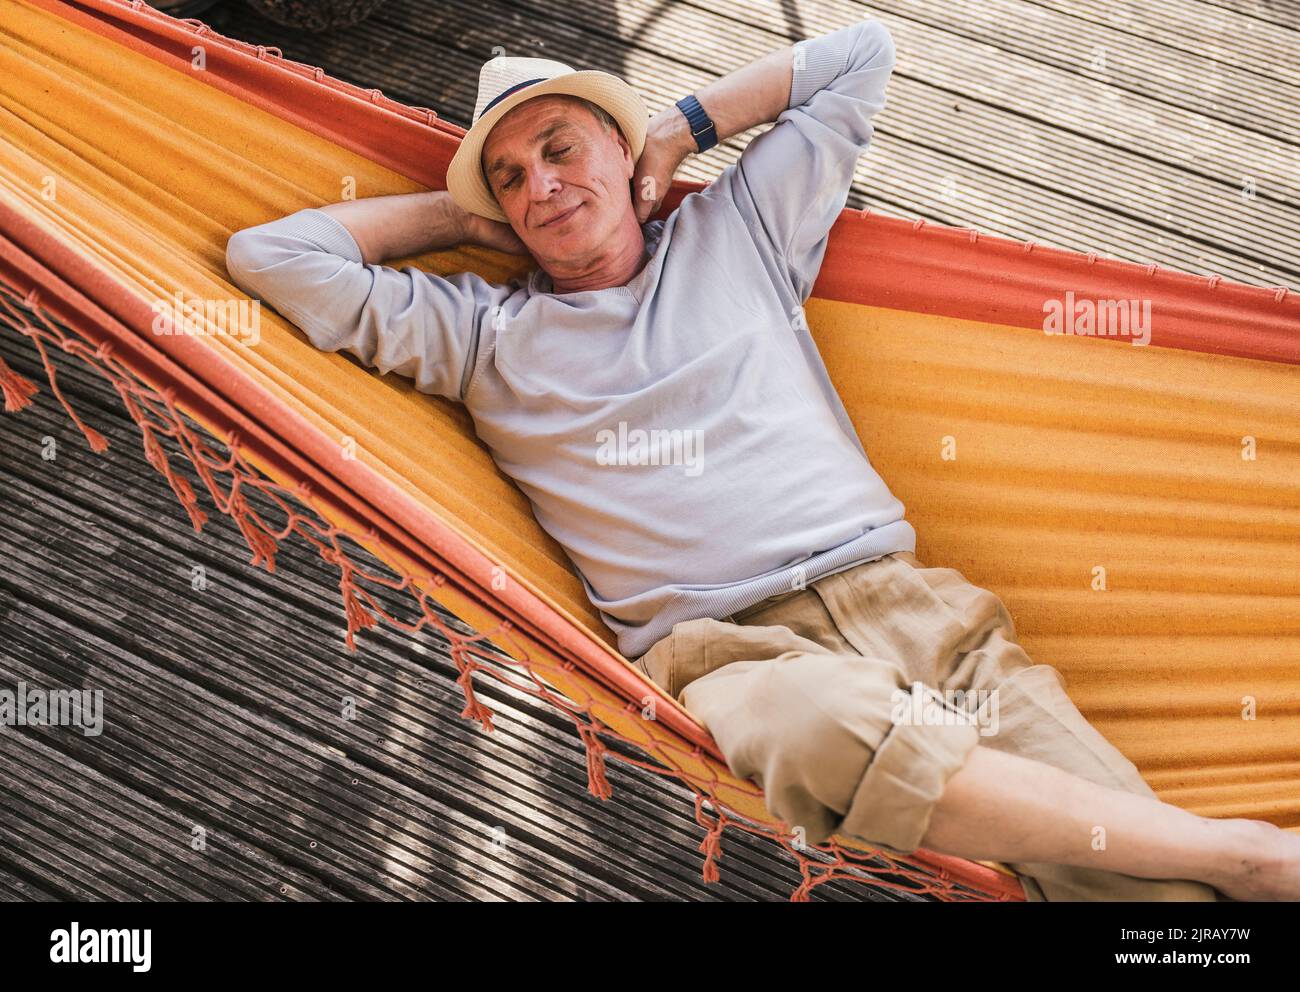 Man with hands behind head sleeping in hammock Stock Photo